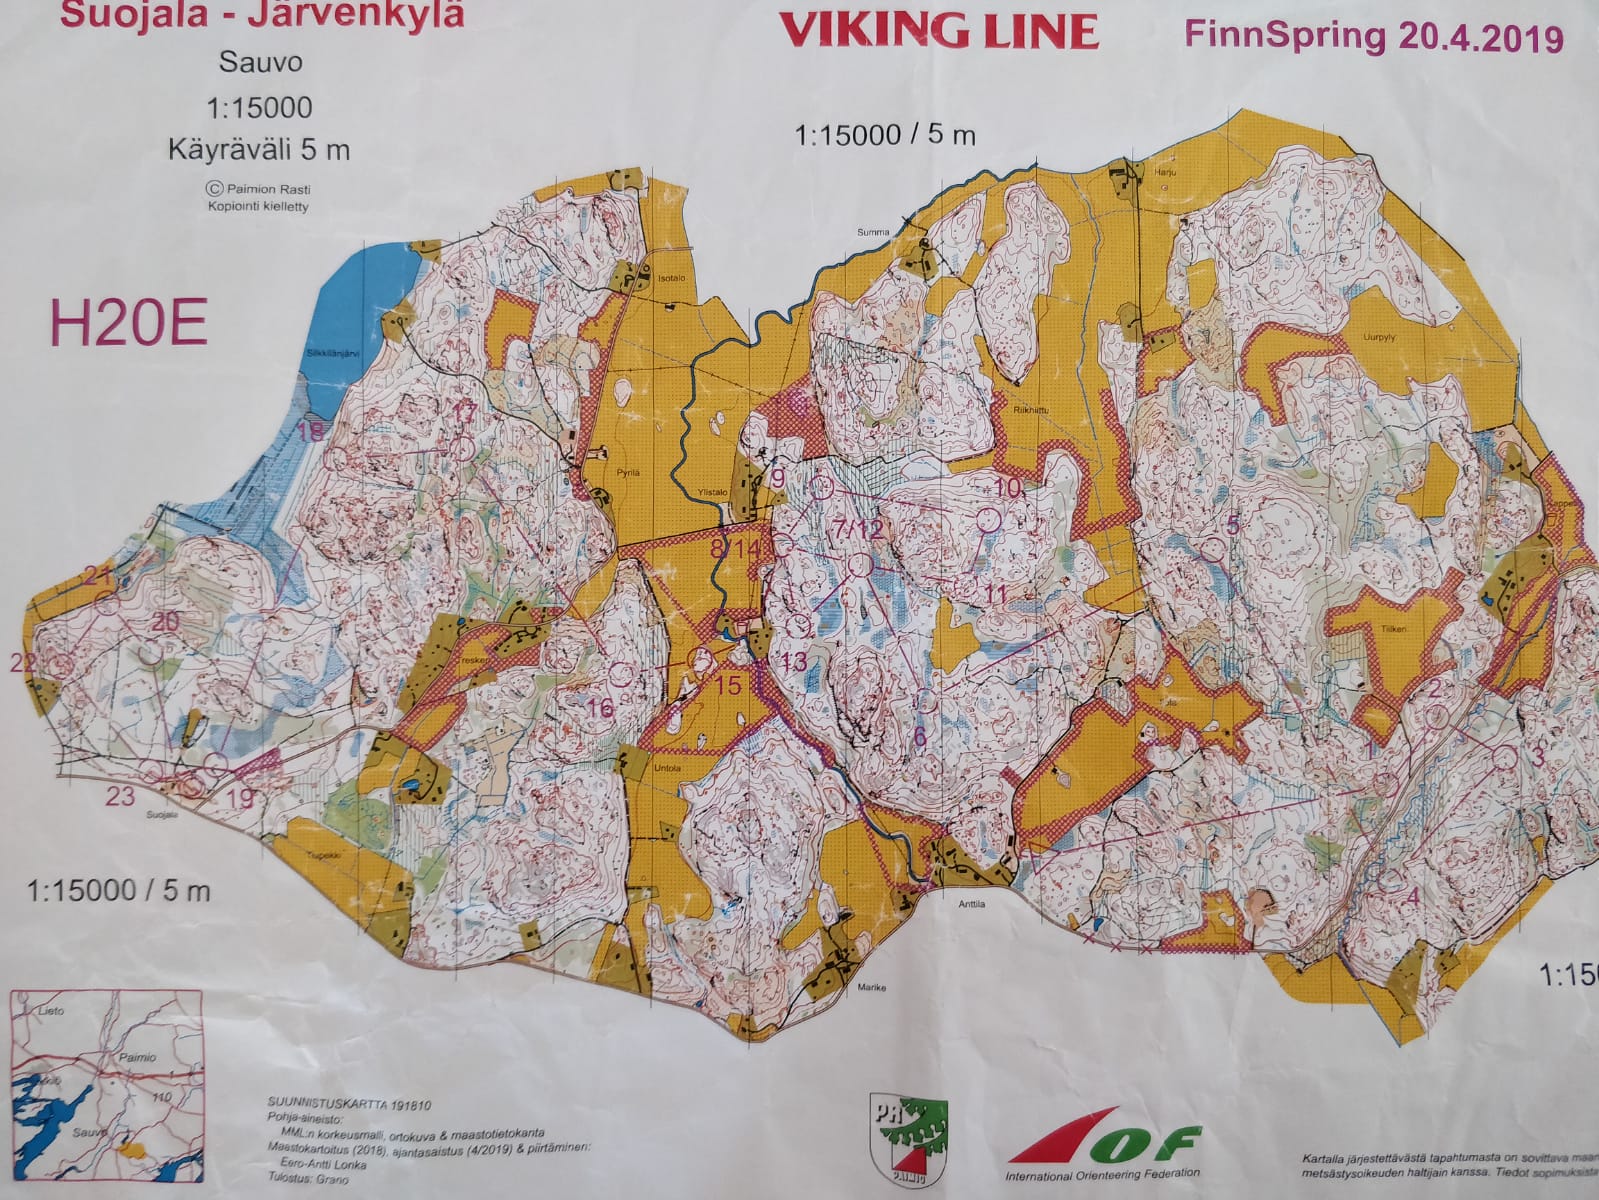 Finnspring 2019 pitkämatka (20/04/2019)